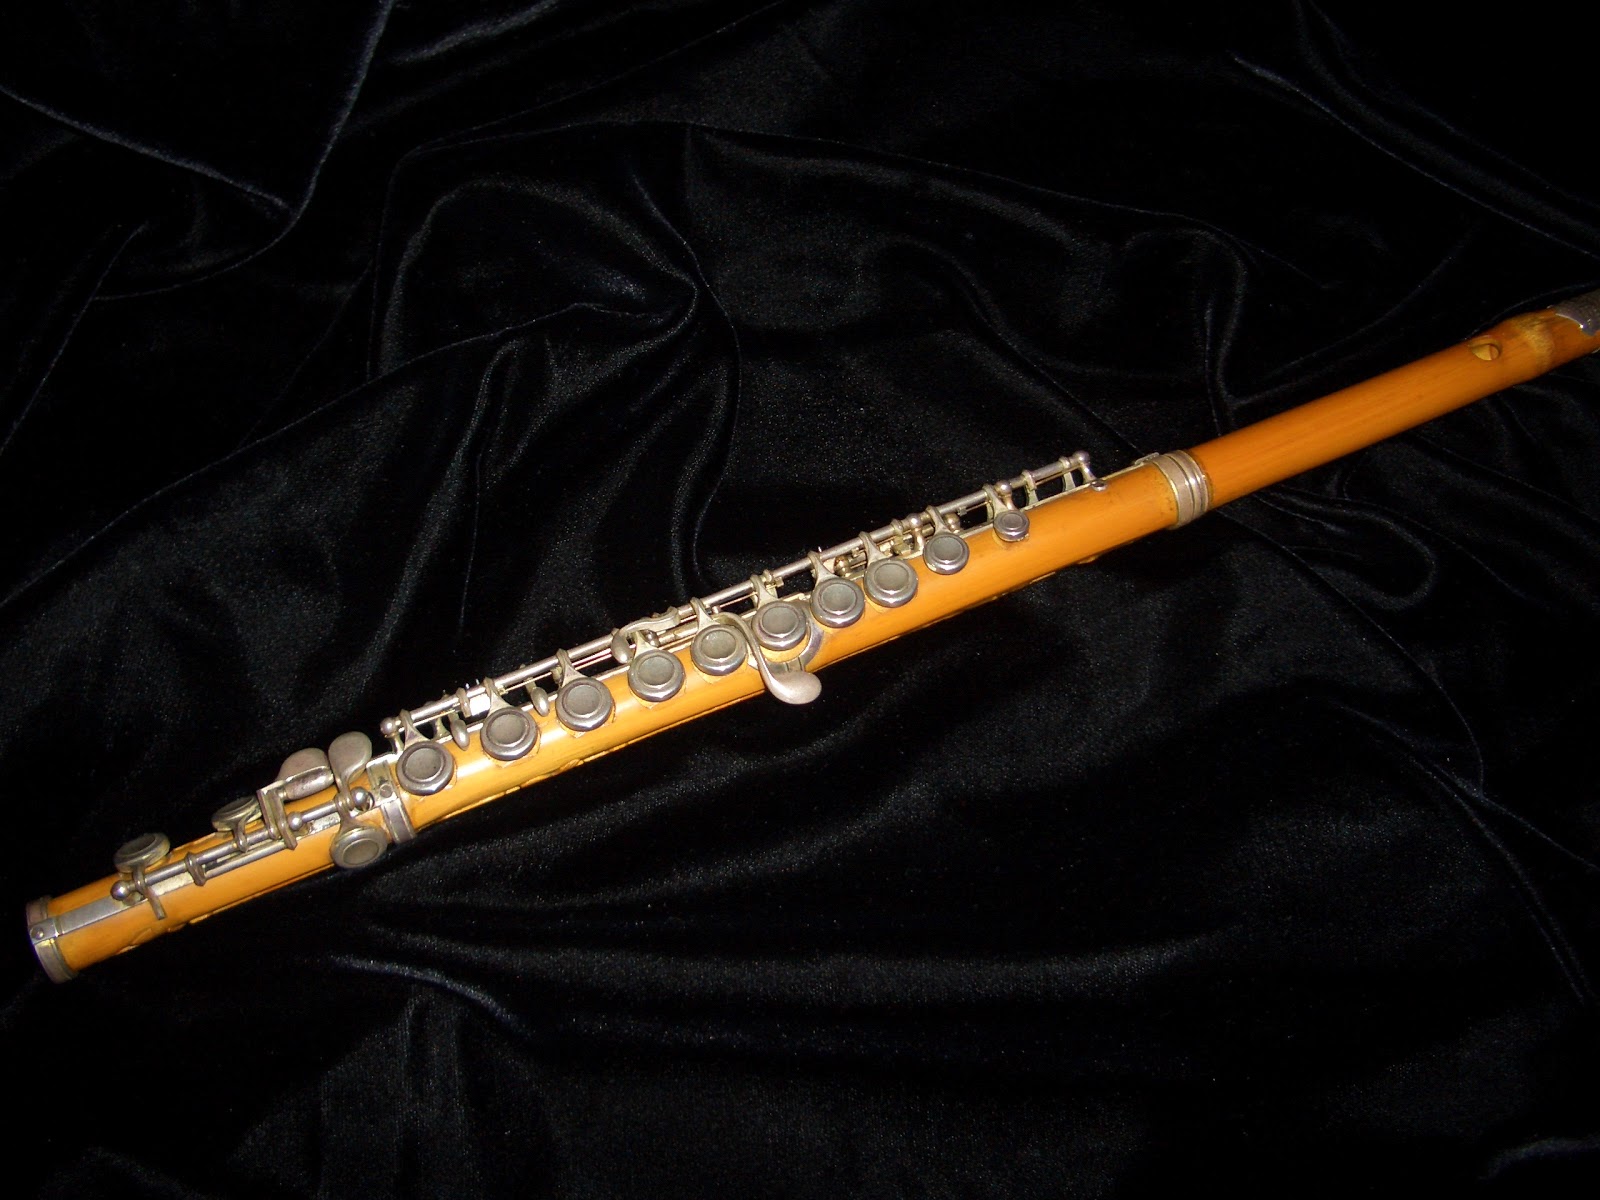 Flute Builder : November 2012